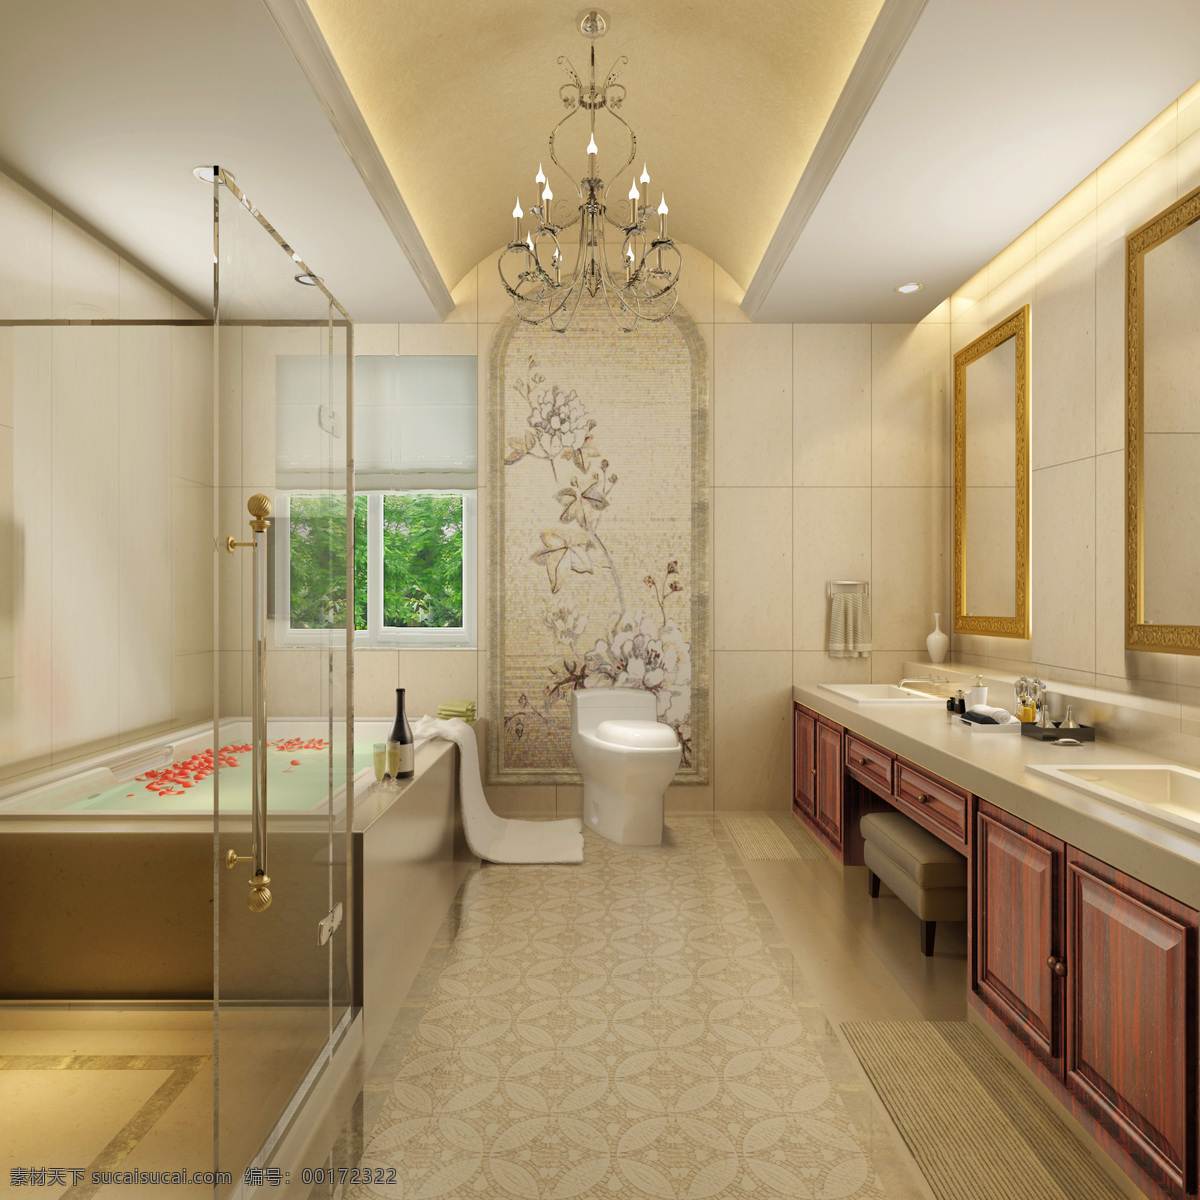 3d设计 3d作品 欧式 欧式卫生间 室内设计 效果图 浴池 卫生间 设计素材 模板下载 浴室 装饰素材